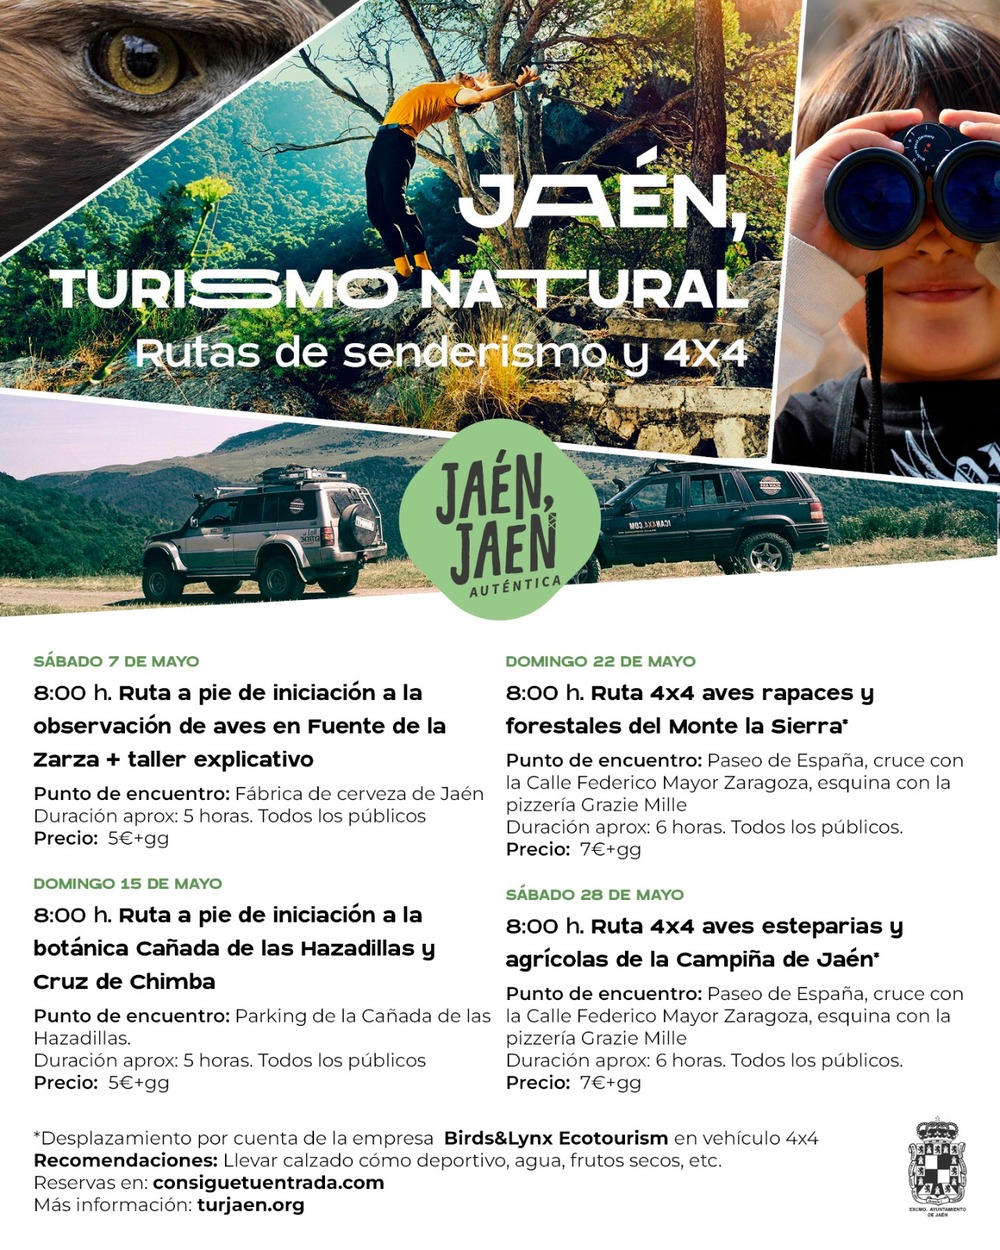 Jaén turismo natural. Rutas de senderismo y 4x4